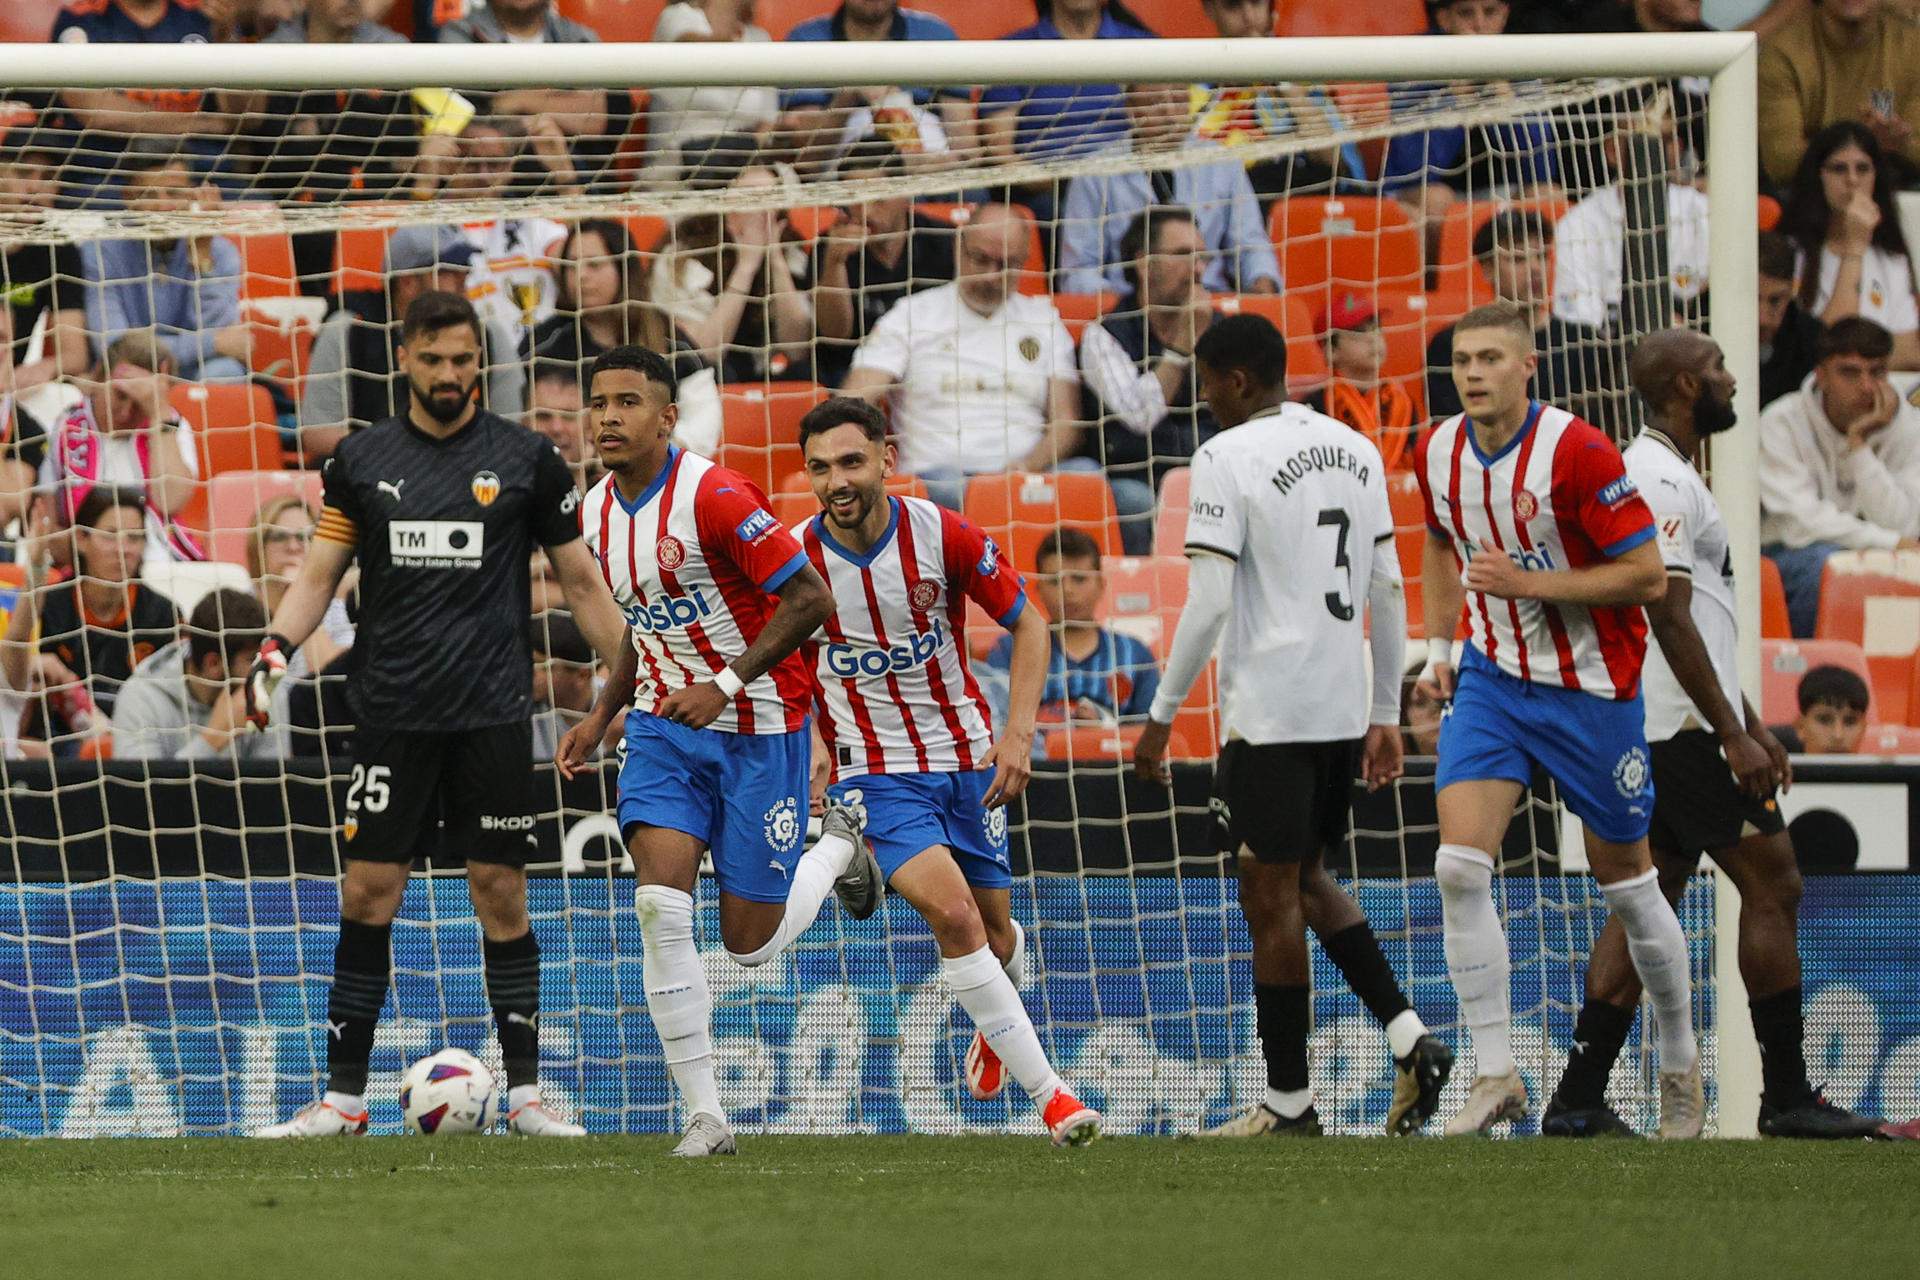 El Girona alarga su sueño goleando al Valencia (1-3) en un choque de realidades muy distintas